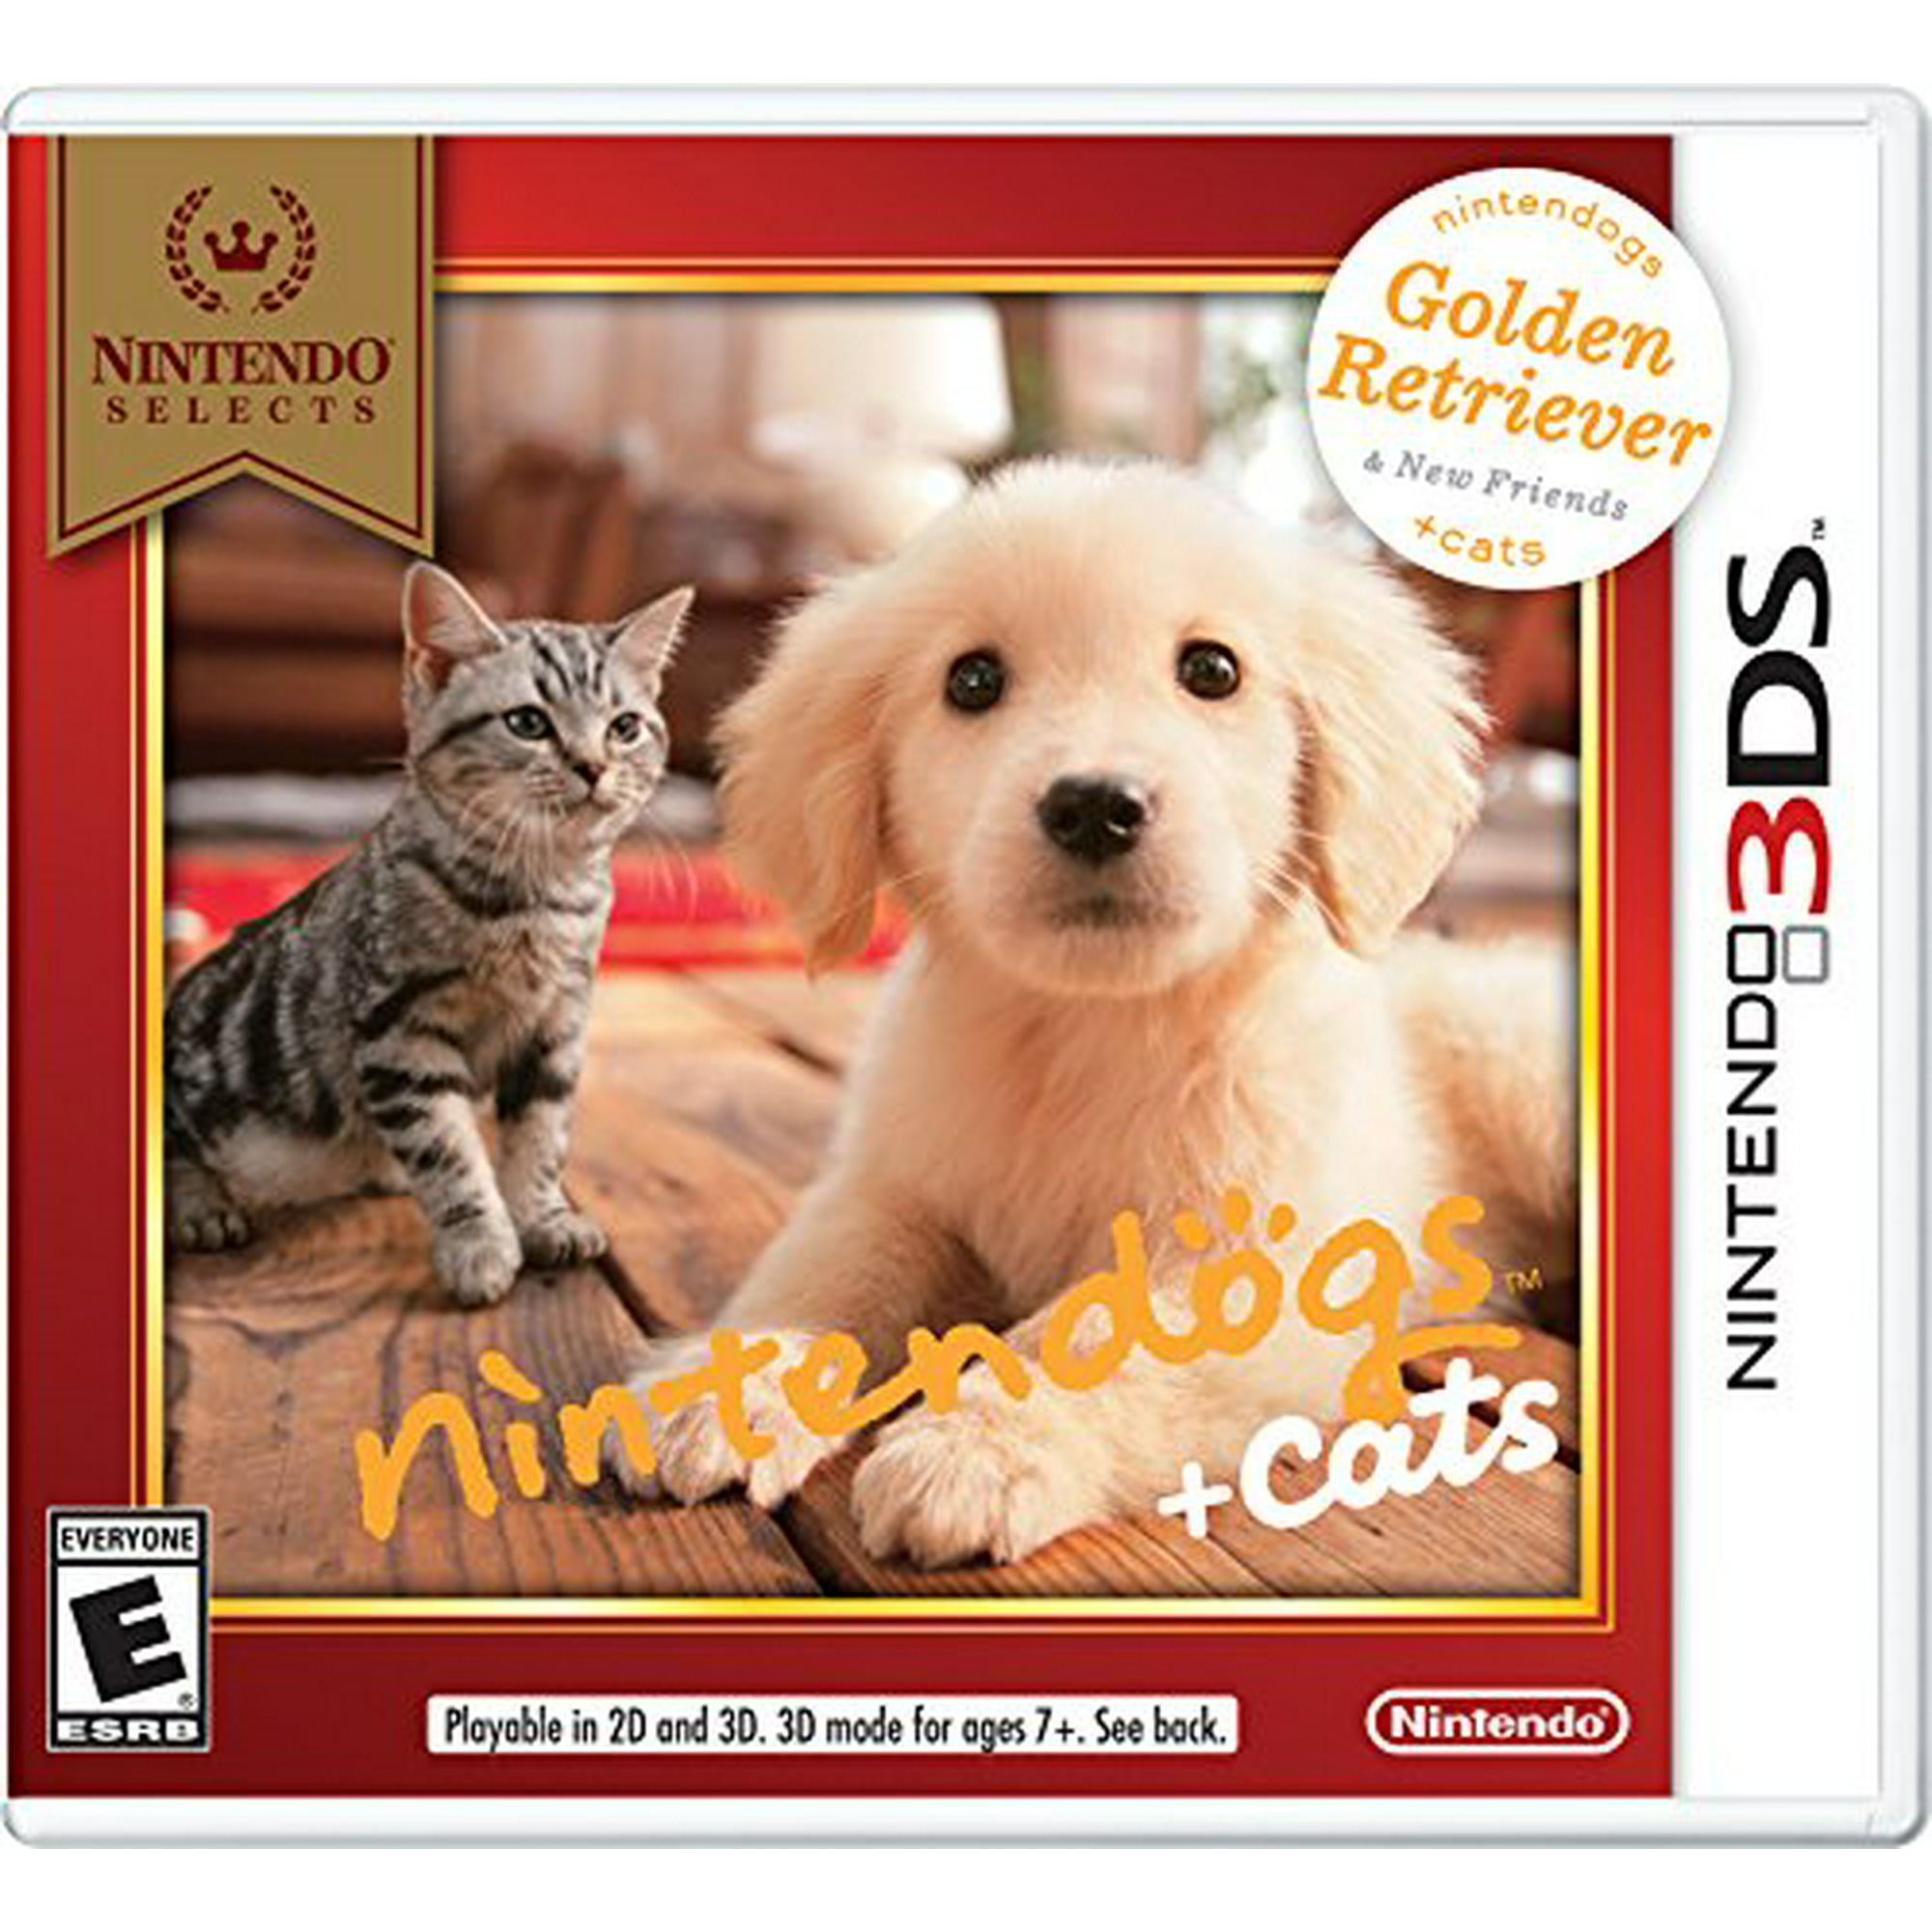 Nintendo cat. Nintendo 3ds nintendogs. Nintendogs Nintendo DS. Nintendogs + Cats. Nintendogs Nintendo Switch.